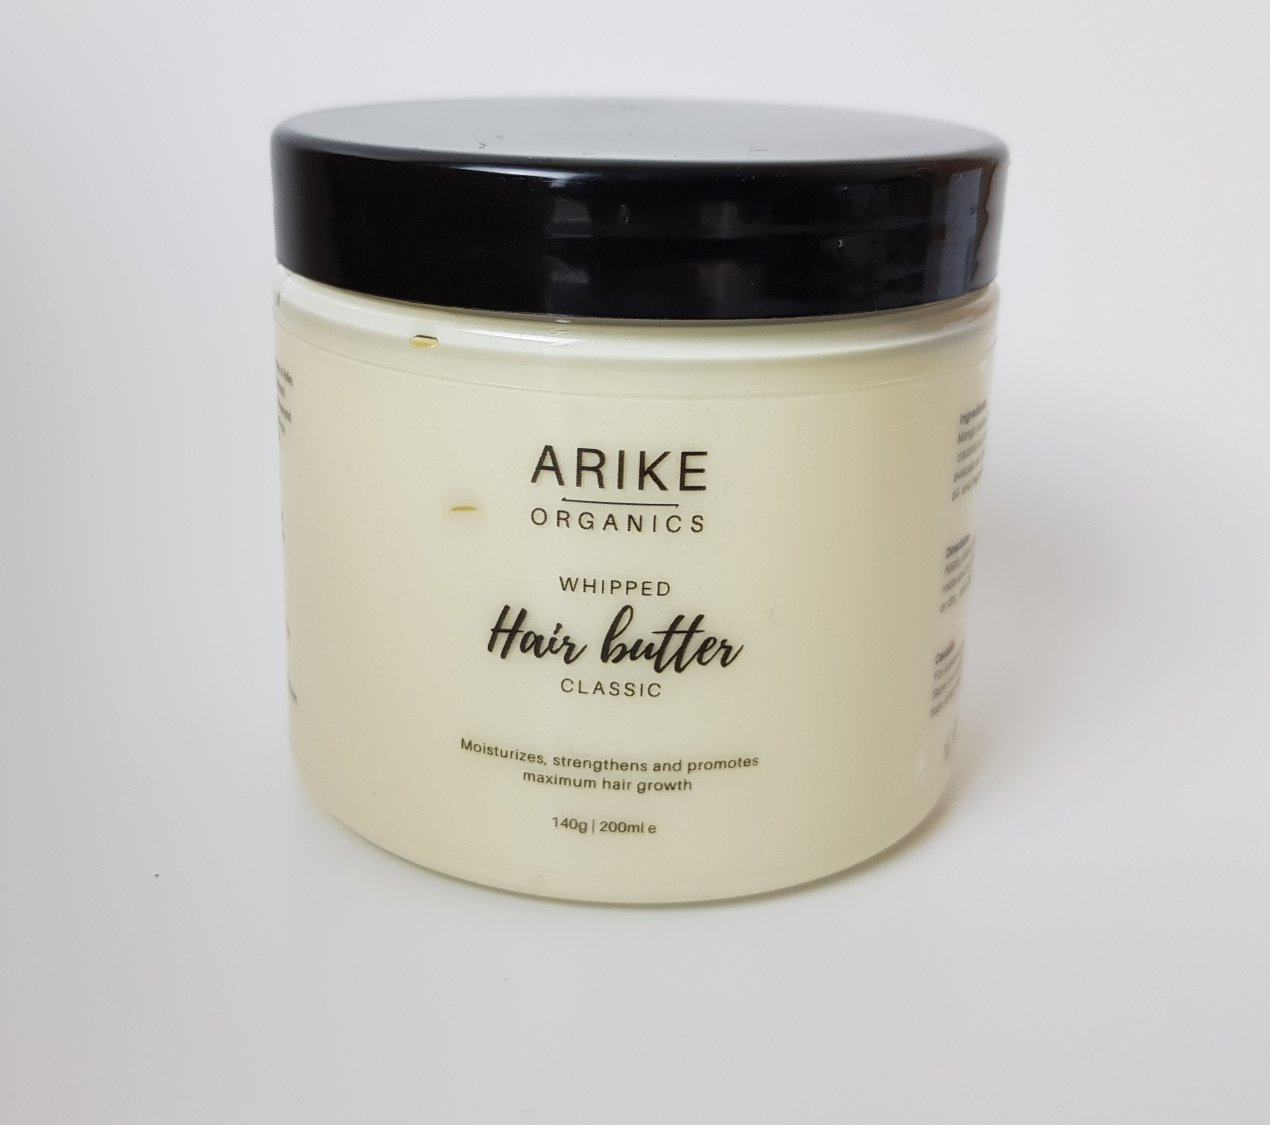 Arike Hair butter (classic) - Arike organics